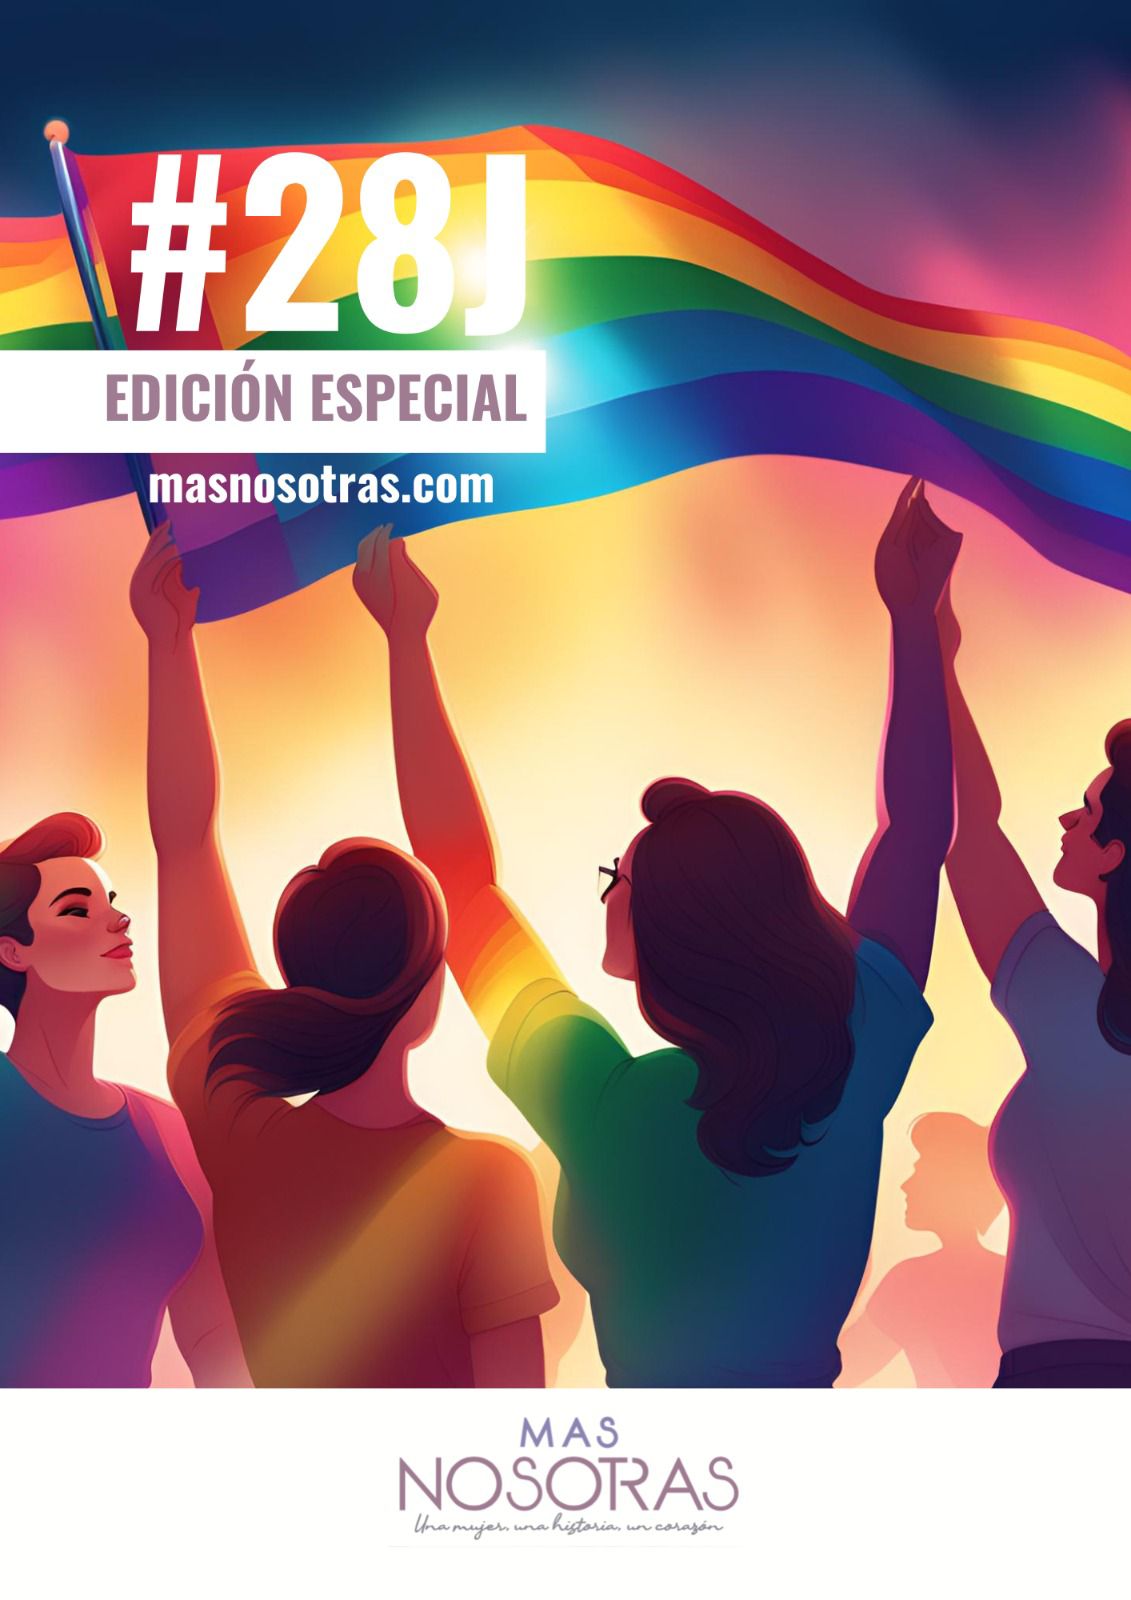 masnosotras.com celebrará el Día del Orgullo LGTBIQ+ con una edición especial